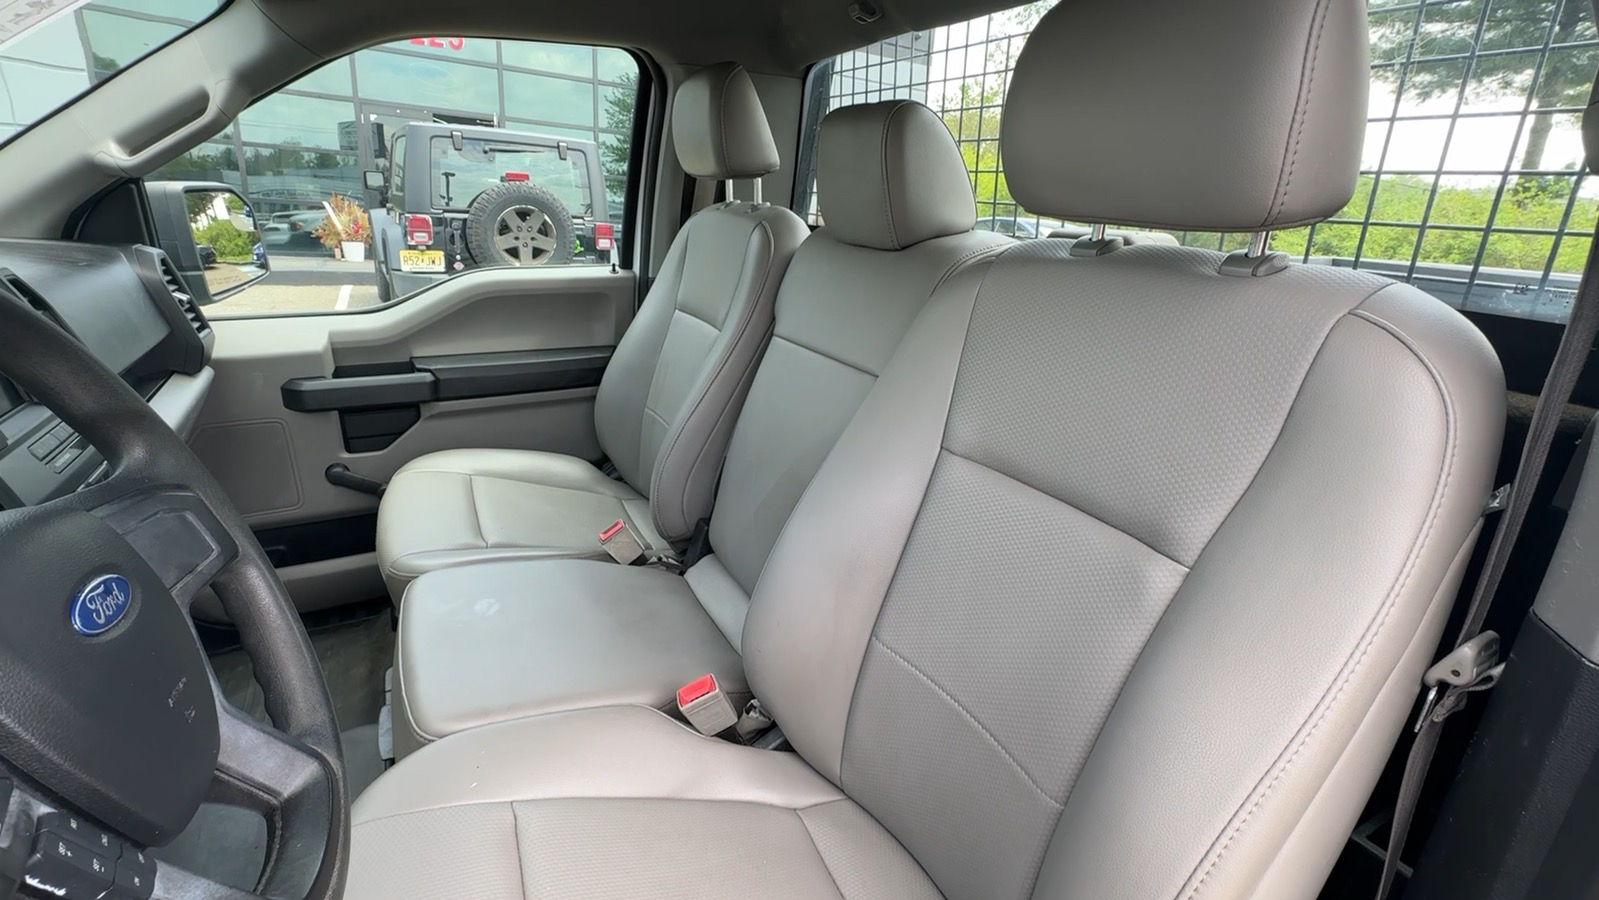 2019 Ford F150 Regular Cab XLT Pickup 2D 6 1/2 ft 55